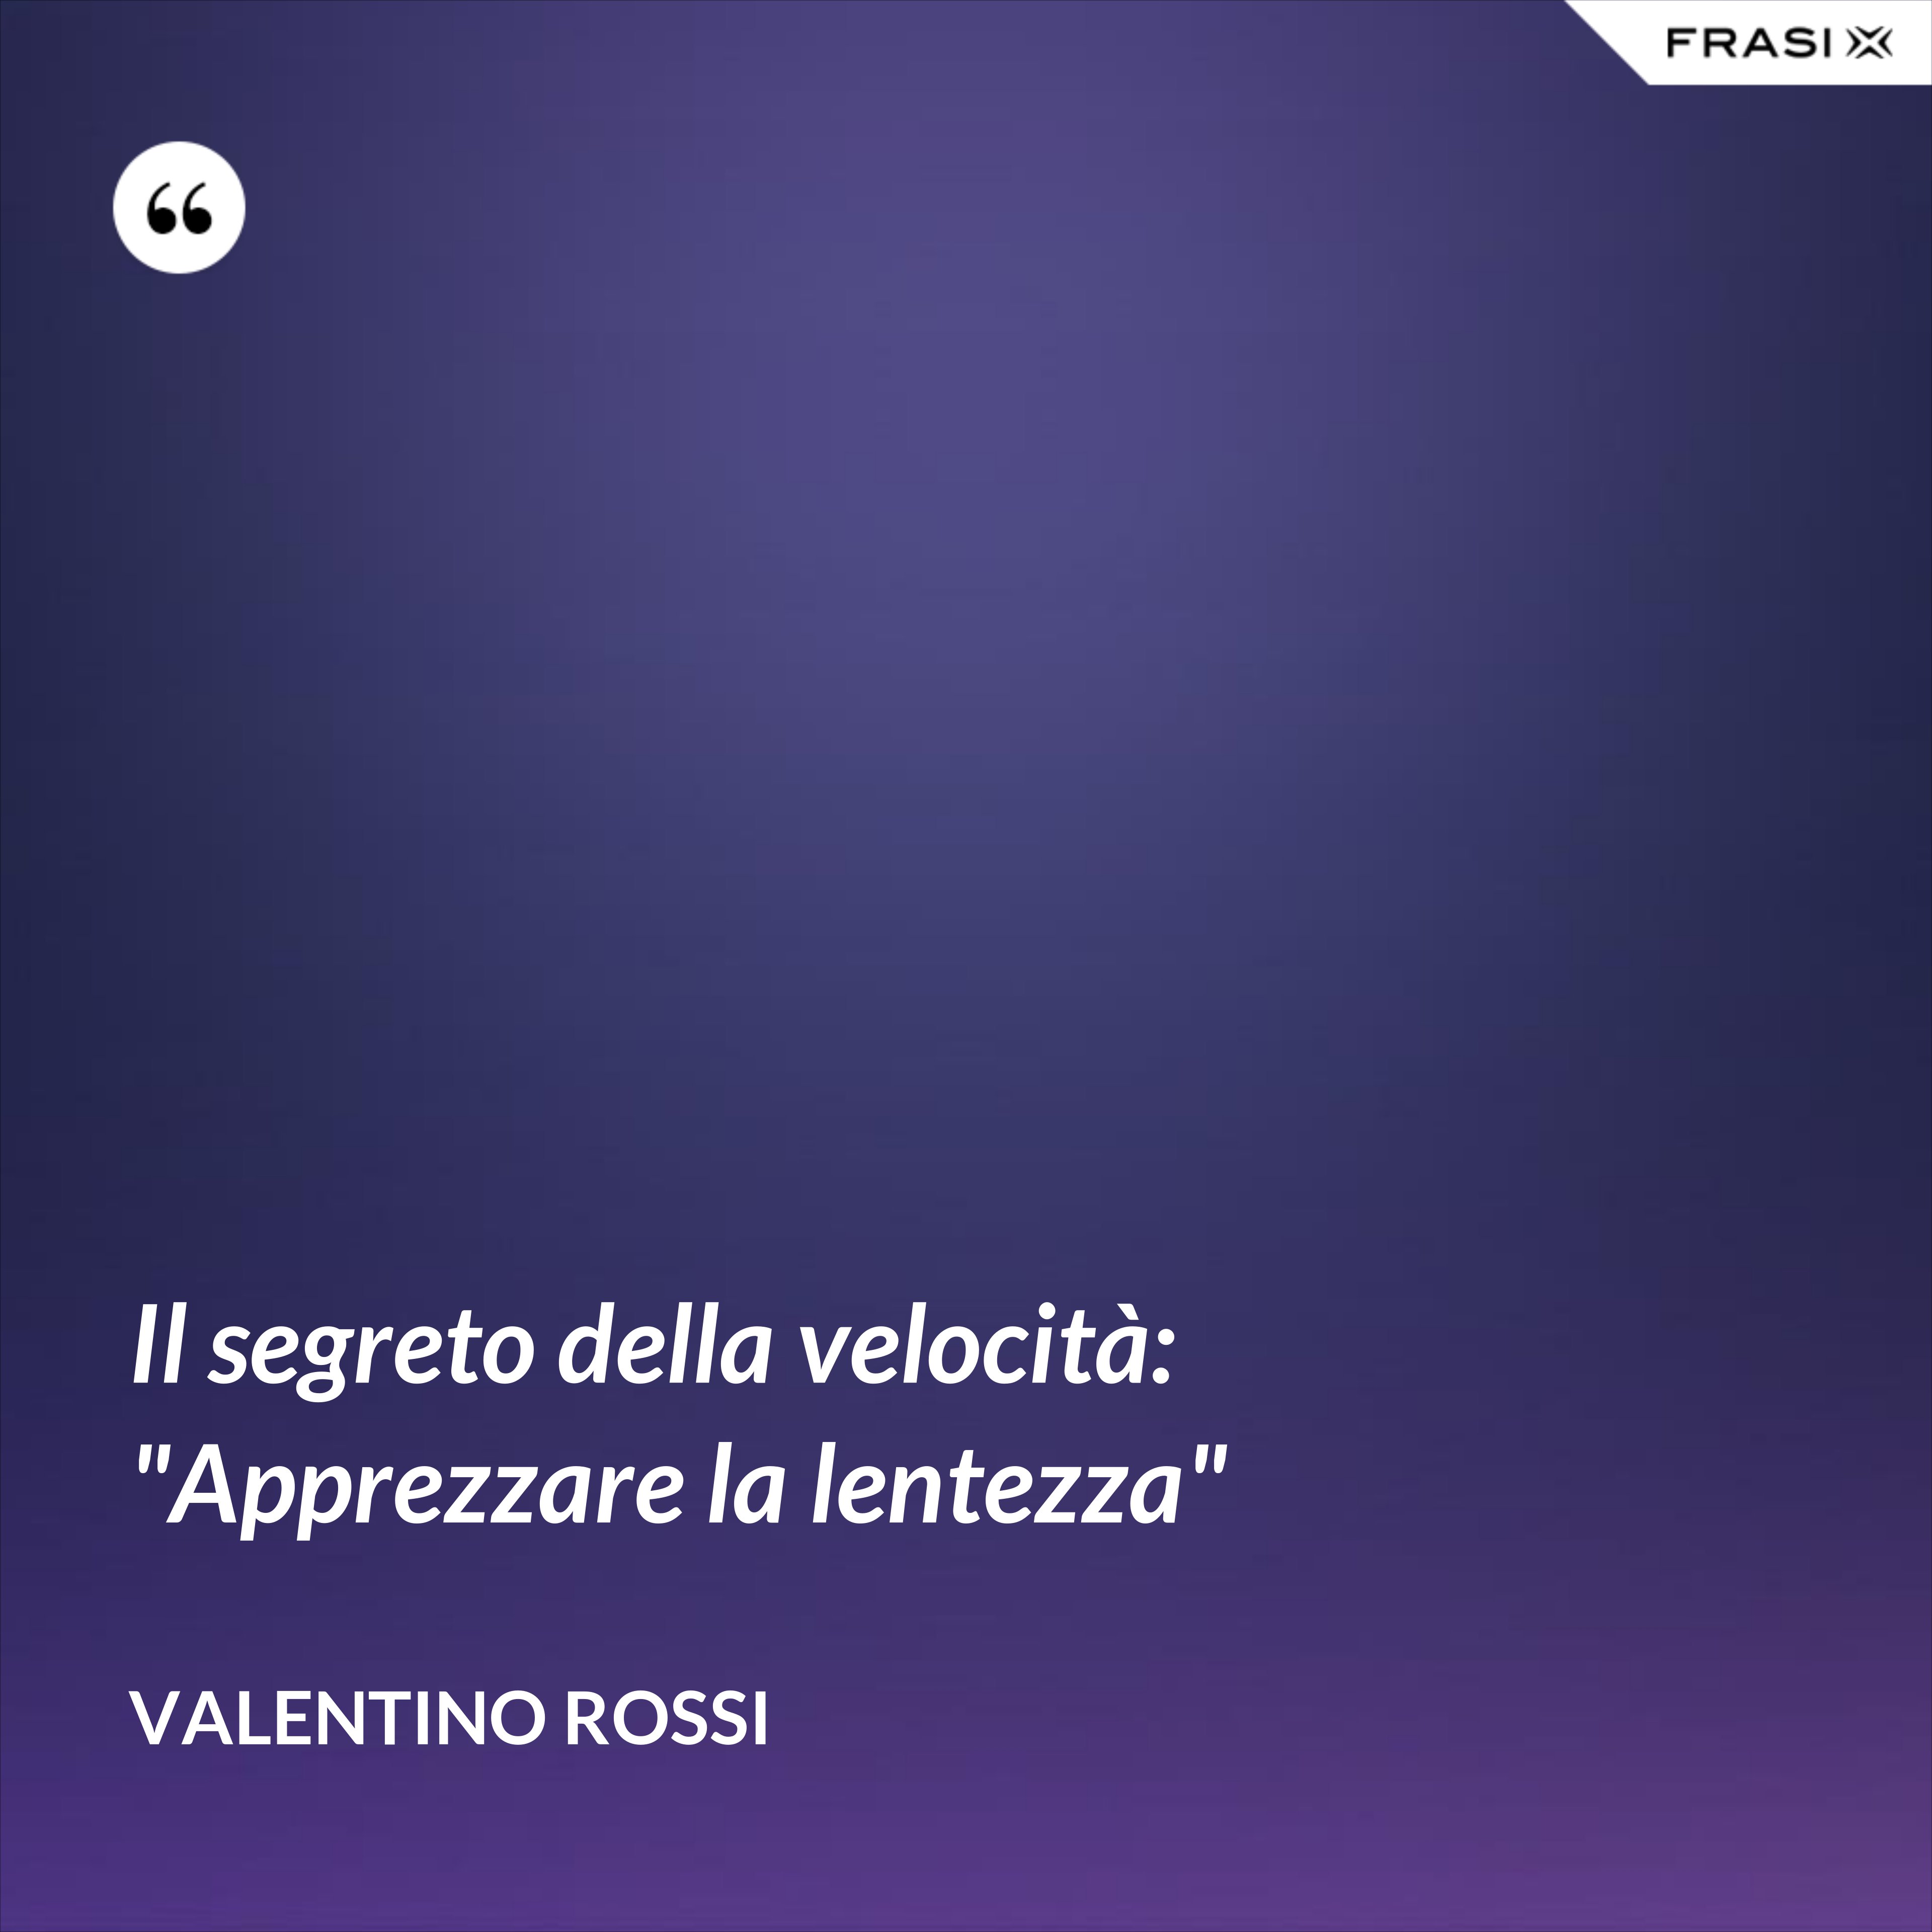 Il segreto della velocità: "Apprezzare la lentezza" - Valentino Rossi